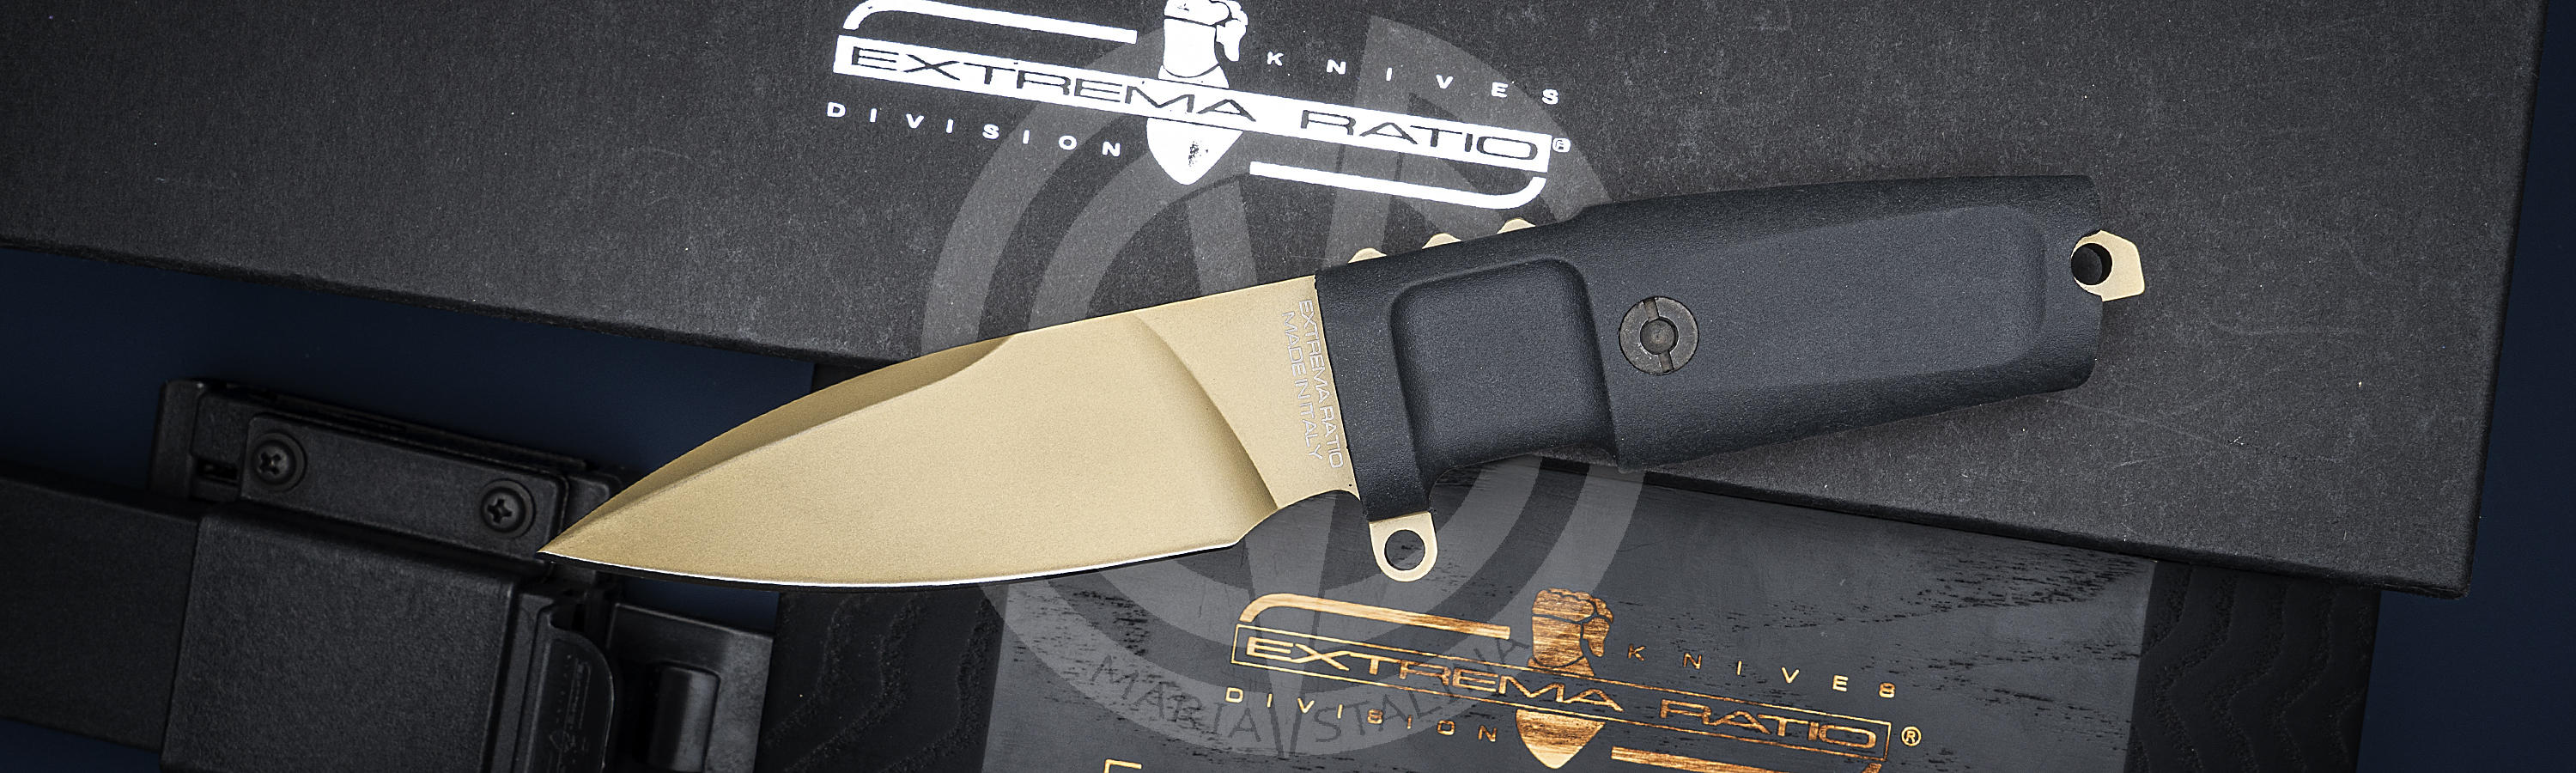 Limited edition knife 7/30 Shrapnel OG Gold